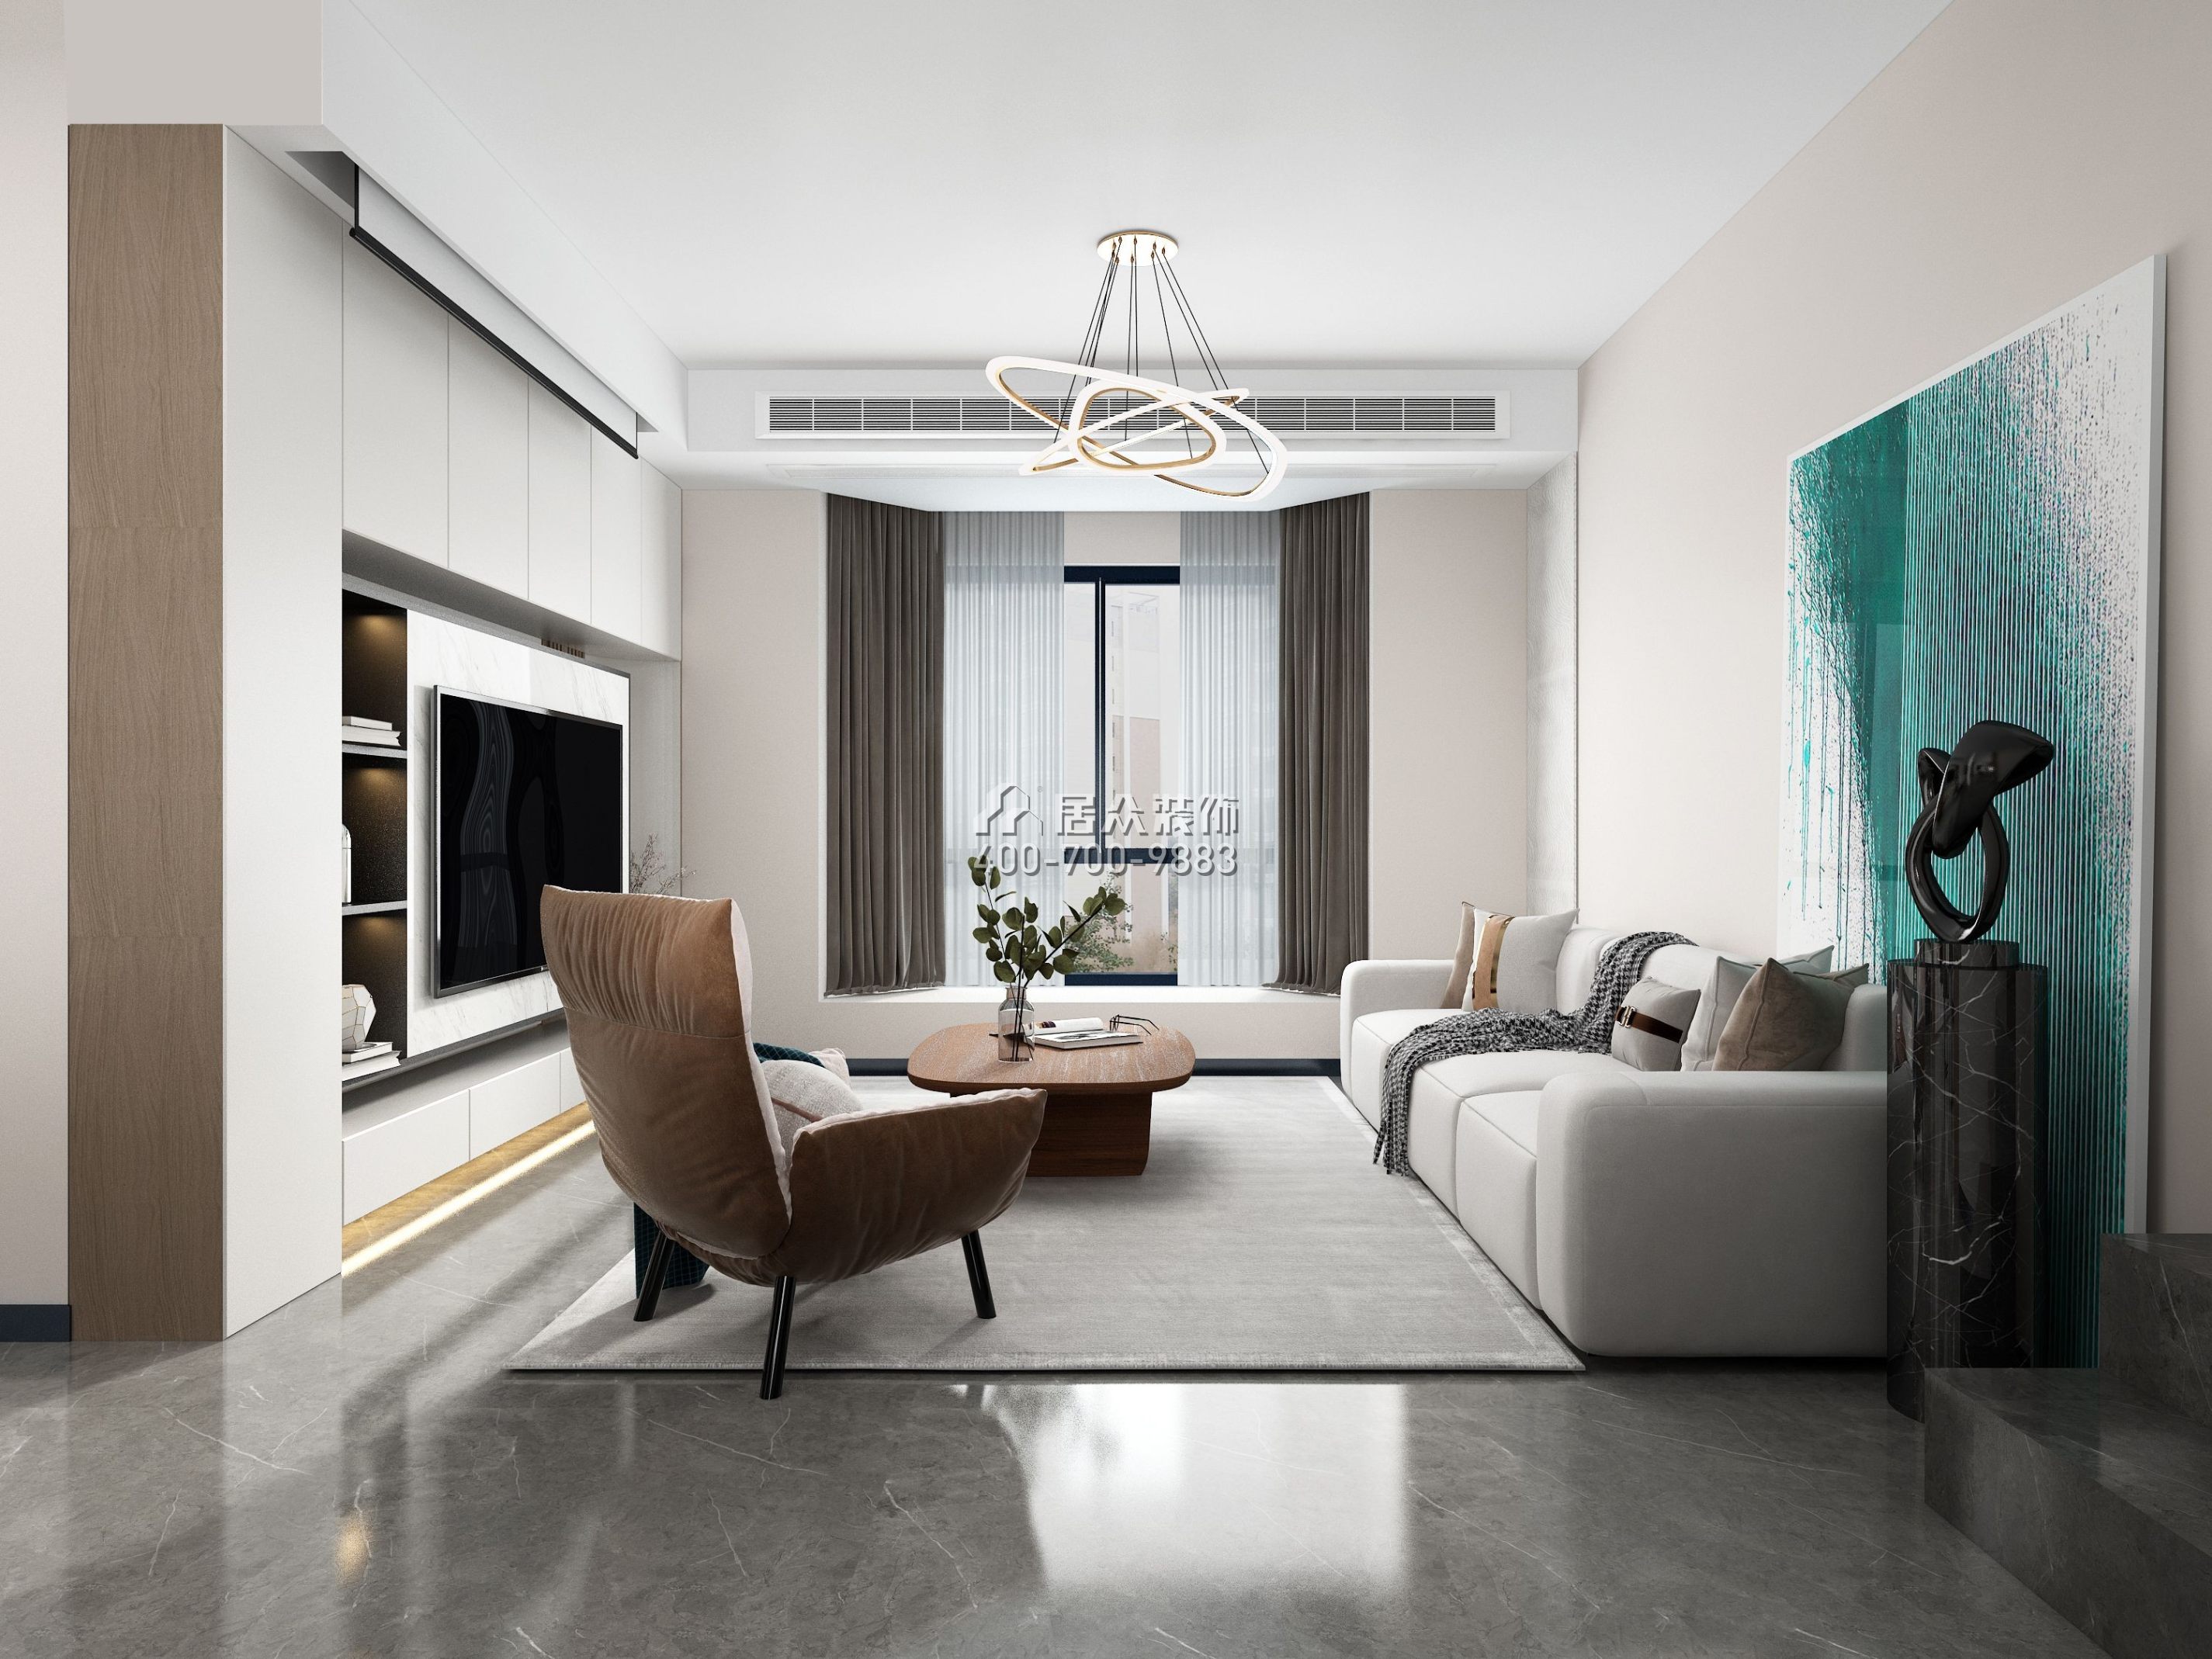 星海名城110平方米现代简约风格平层户型客厅装修效果图